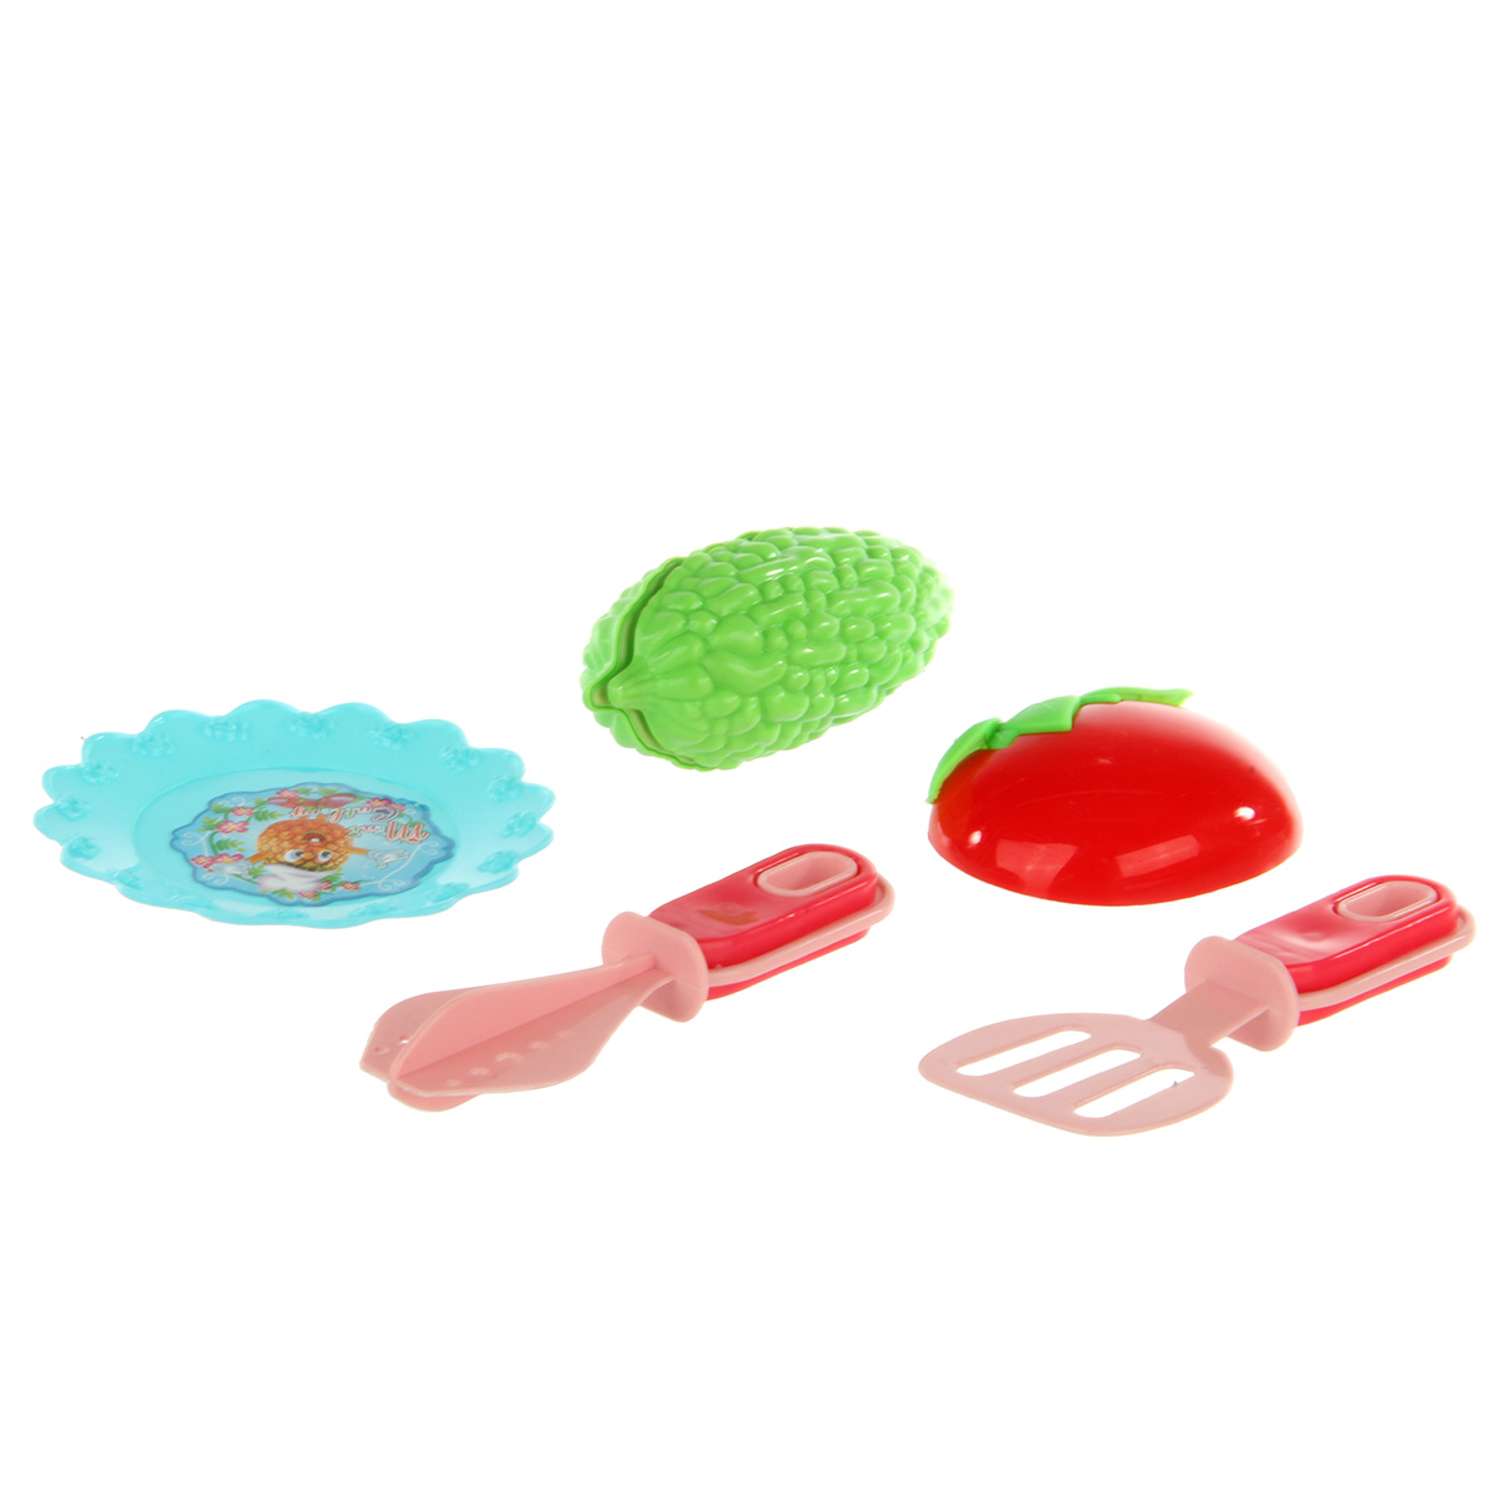 Детская посуда игрушечная Veld Co с плитой и продуктами - фото 4